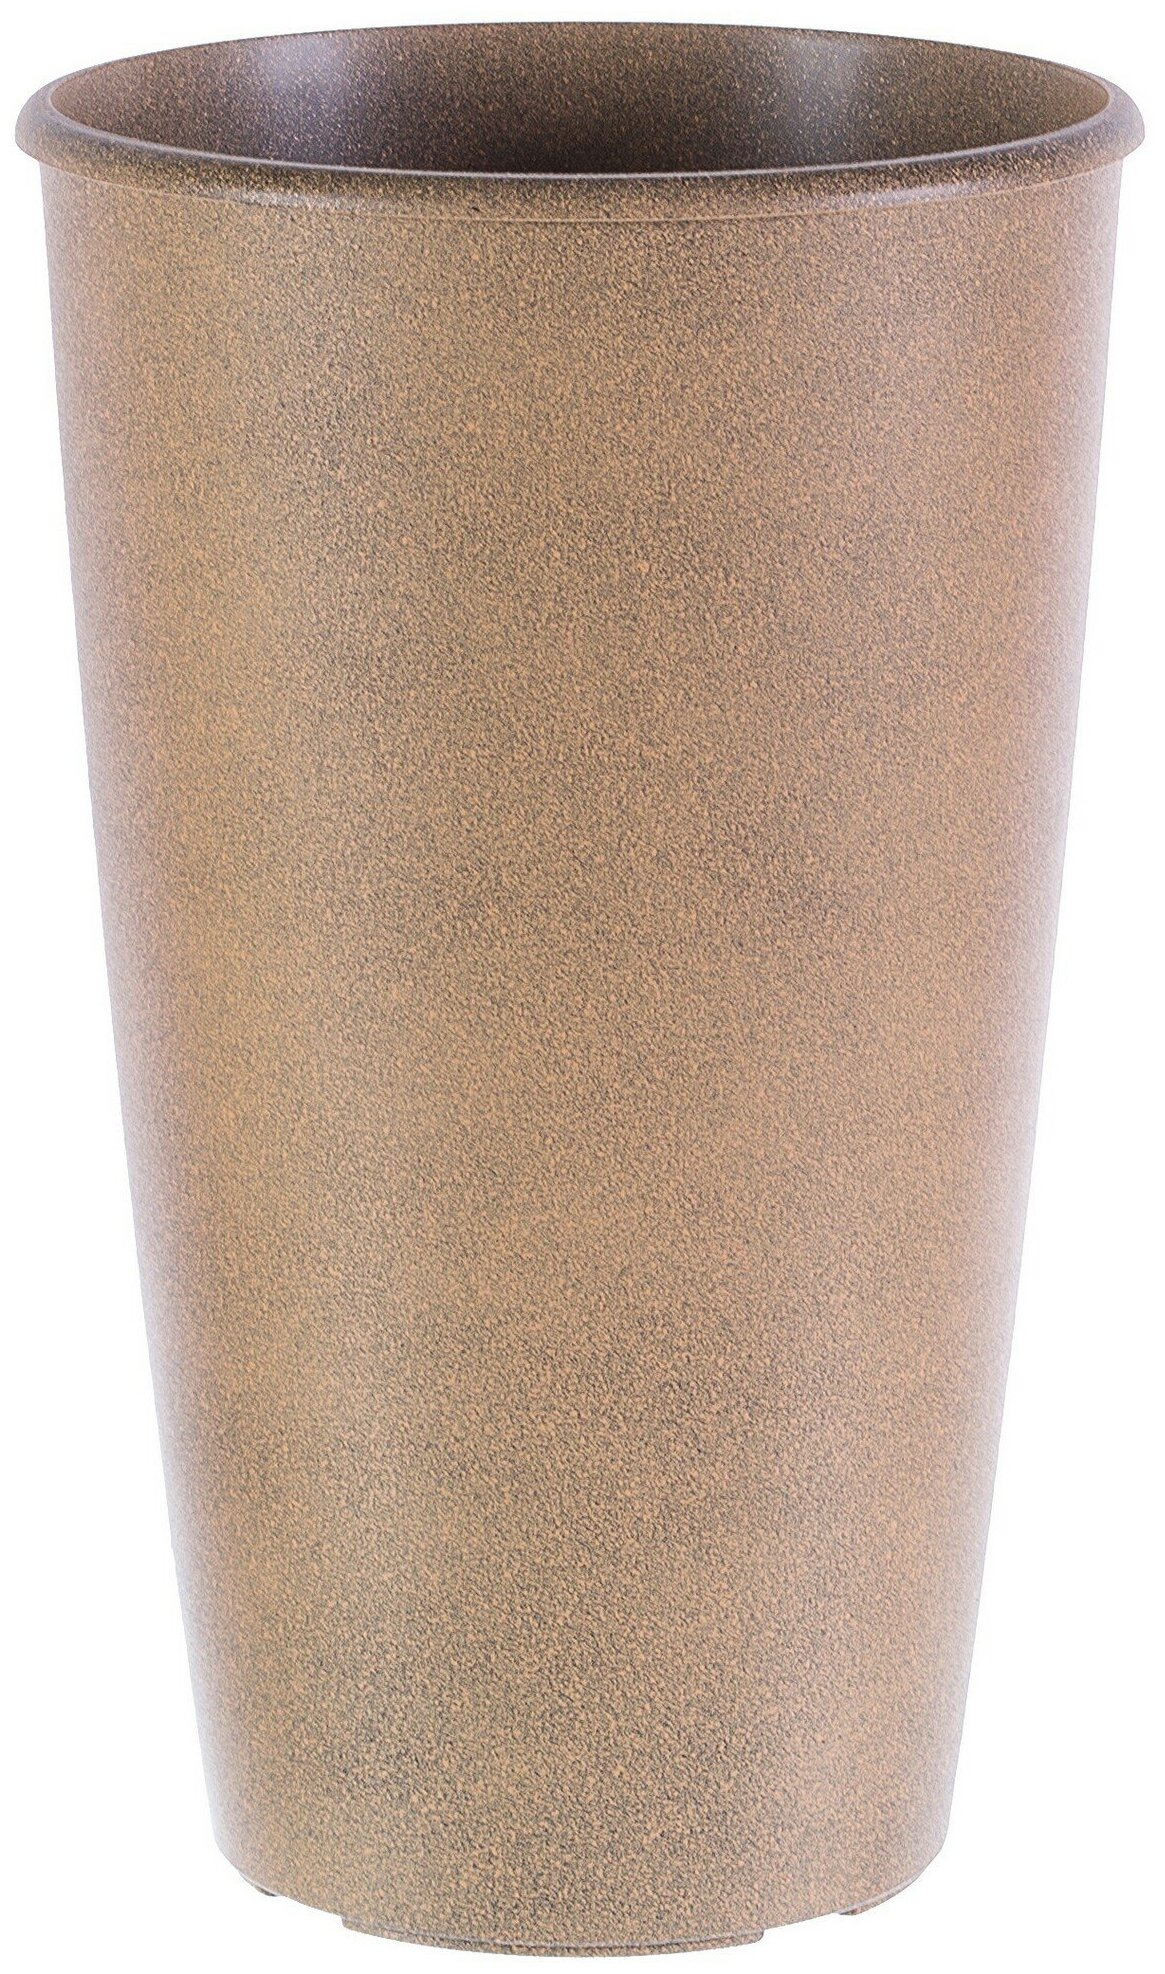 Горшок цветочный Коне ø28 h45 см v18.5 л пластик коричневый